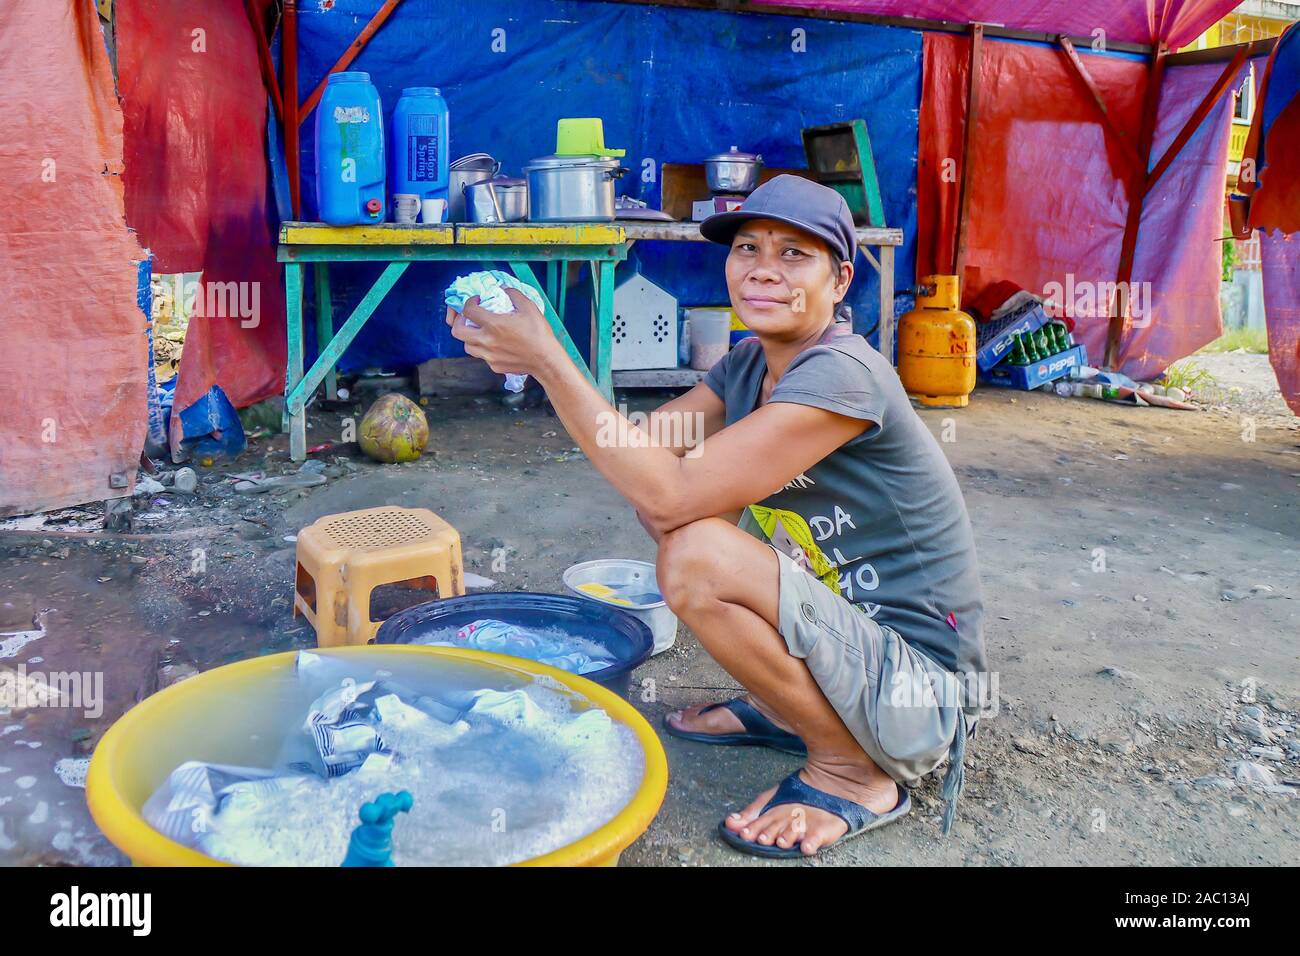 Une femme vivant sous des bâches en plastique, avec un sol de la saleté et des nécessités de base seulement, parce qu'elle ne peut pas se permettre une vraie maison. Banque D'Images